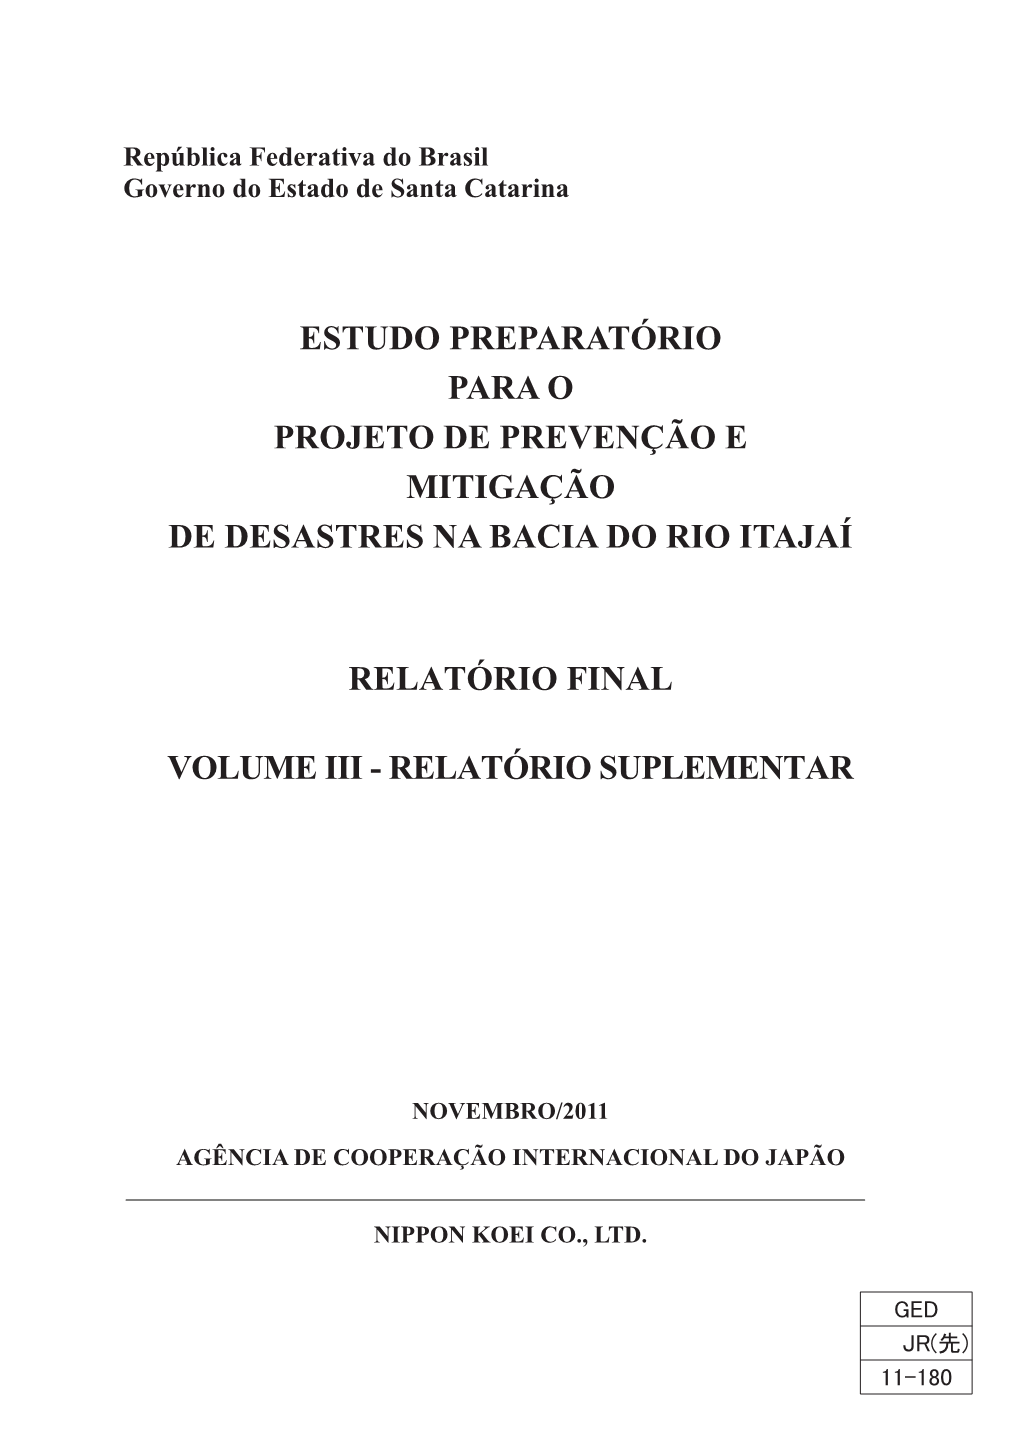 Estudo Preparatório Para O Projeto De Prevenção E Mitigação De Desastres Na Bacia Do Rio Itajaí